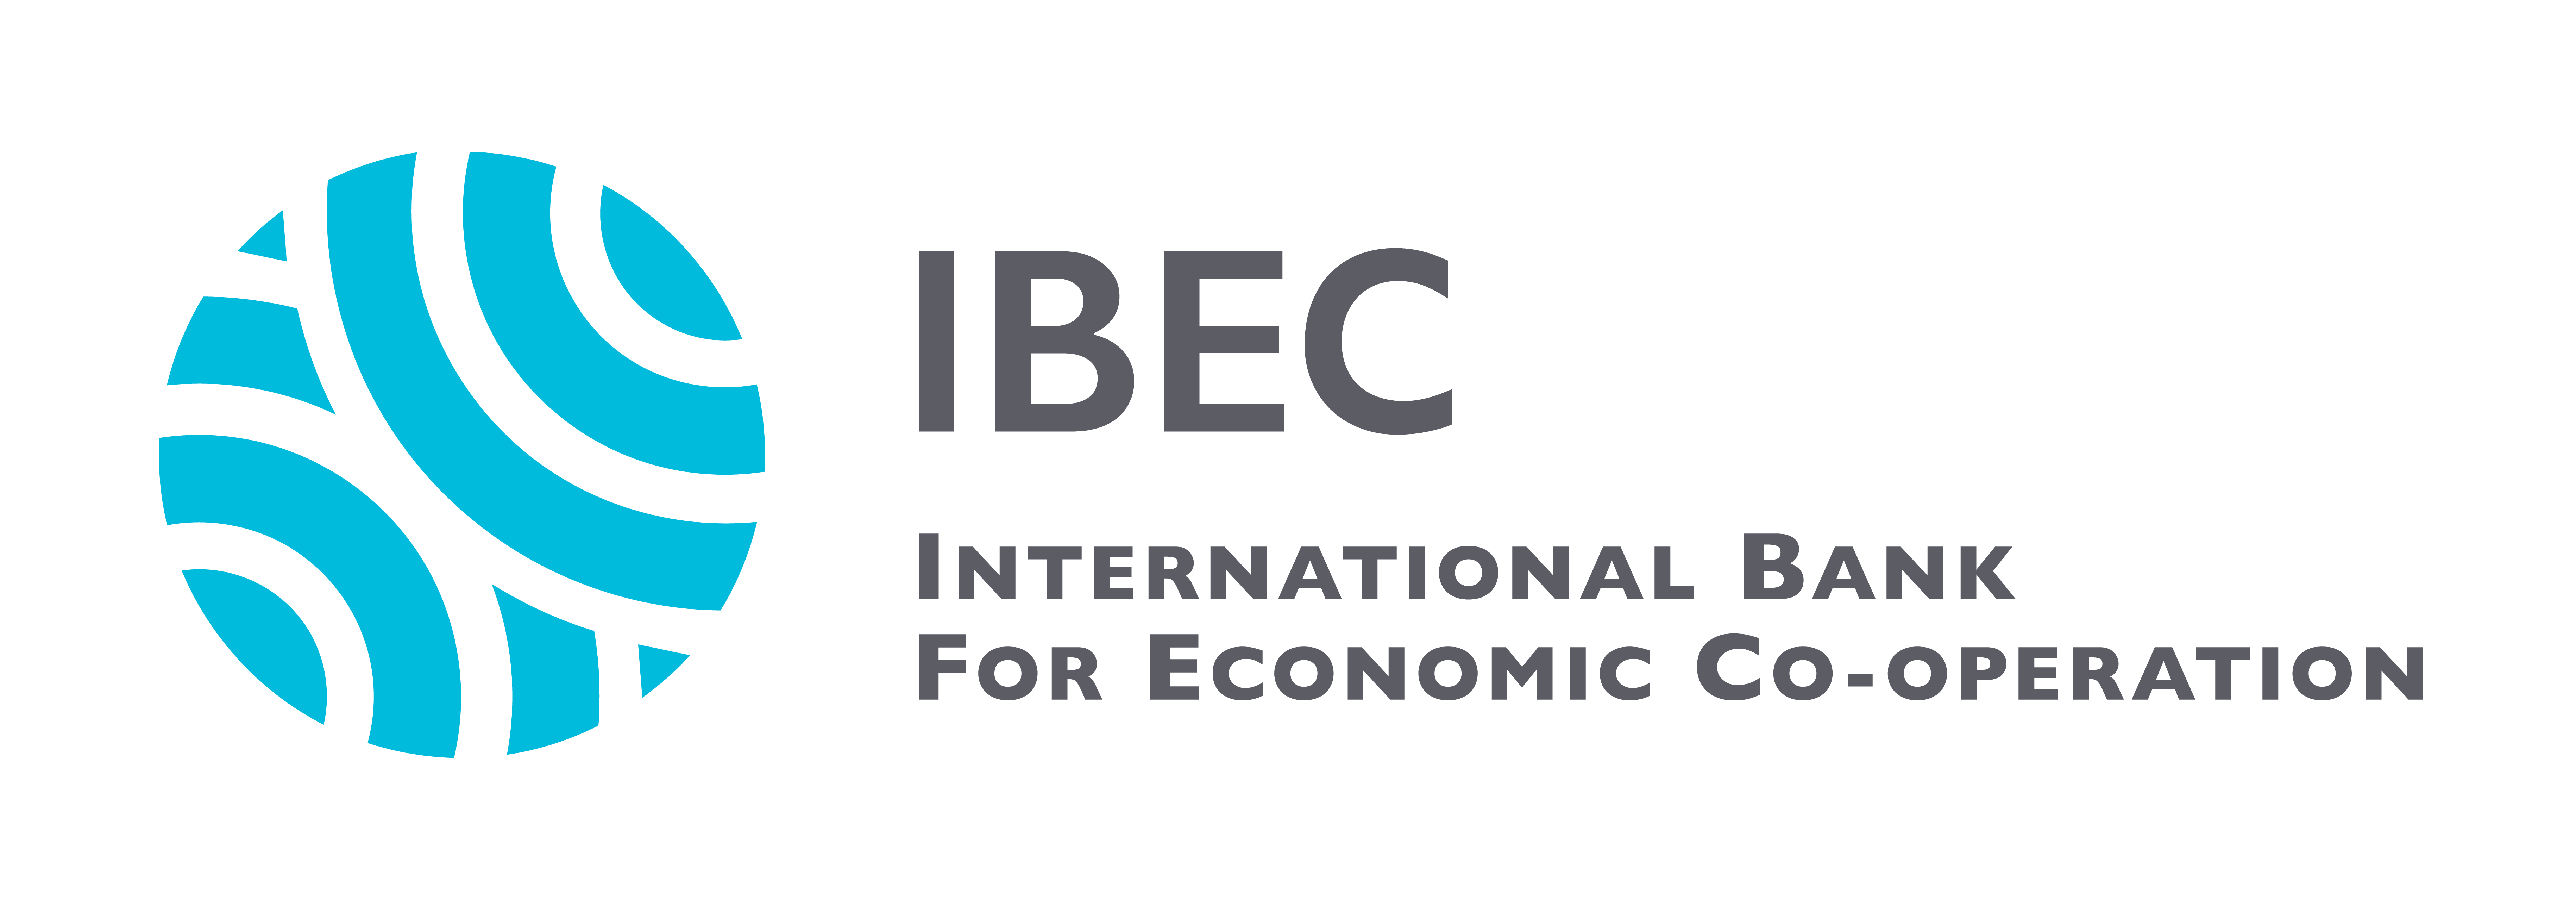 Международный российский банк. Международный банк экономического сотрудничества Маши Порываевой. МБЭС логотип. Международный банк экономического сотрудничества логотип. IBEC банк.